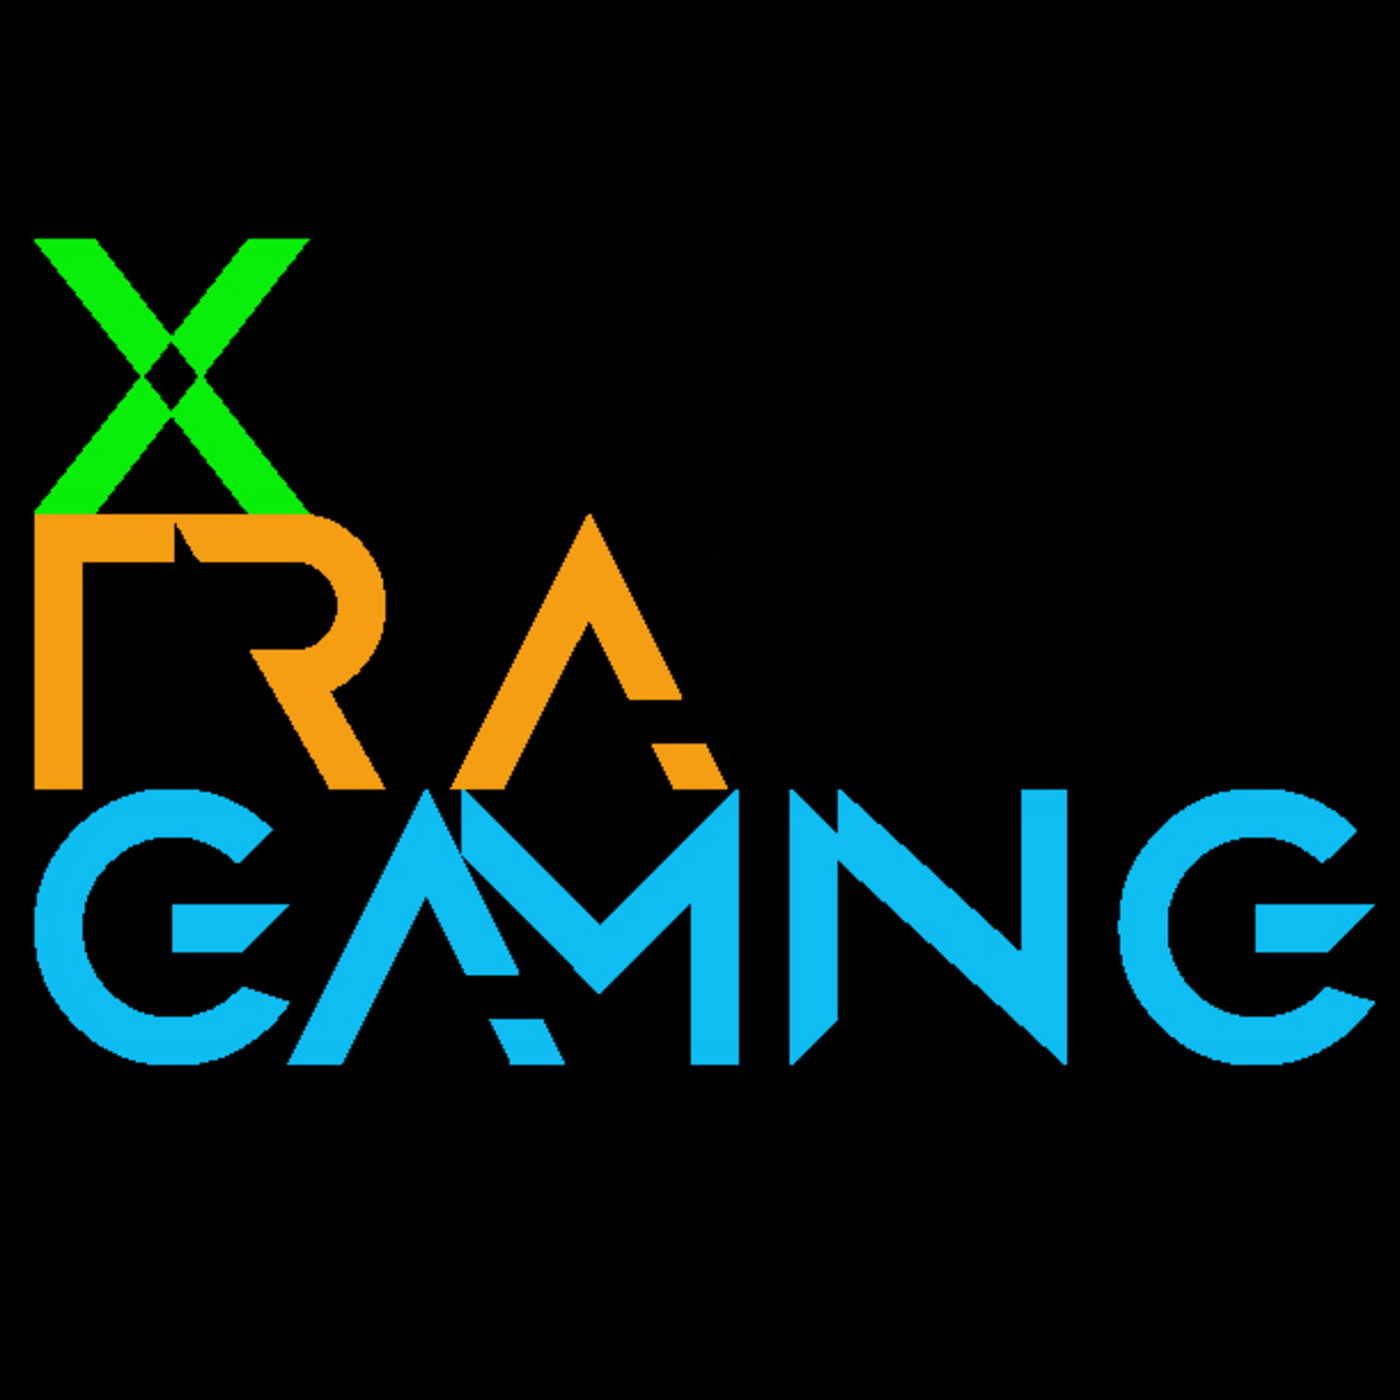 Xtragaming 1x04 - Hablando de cosicas de videojuegos